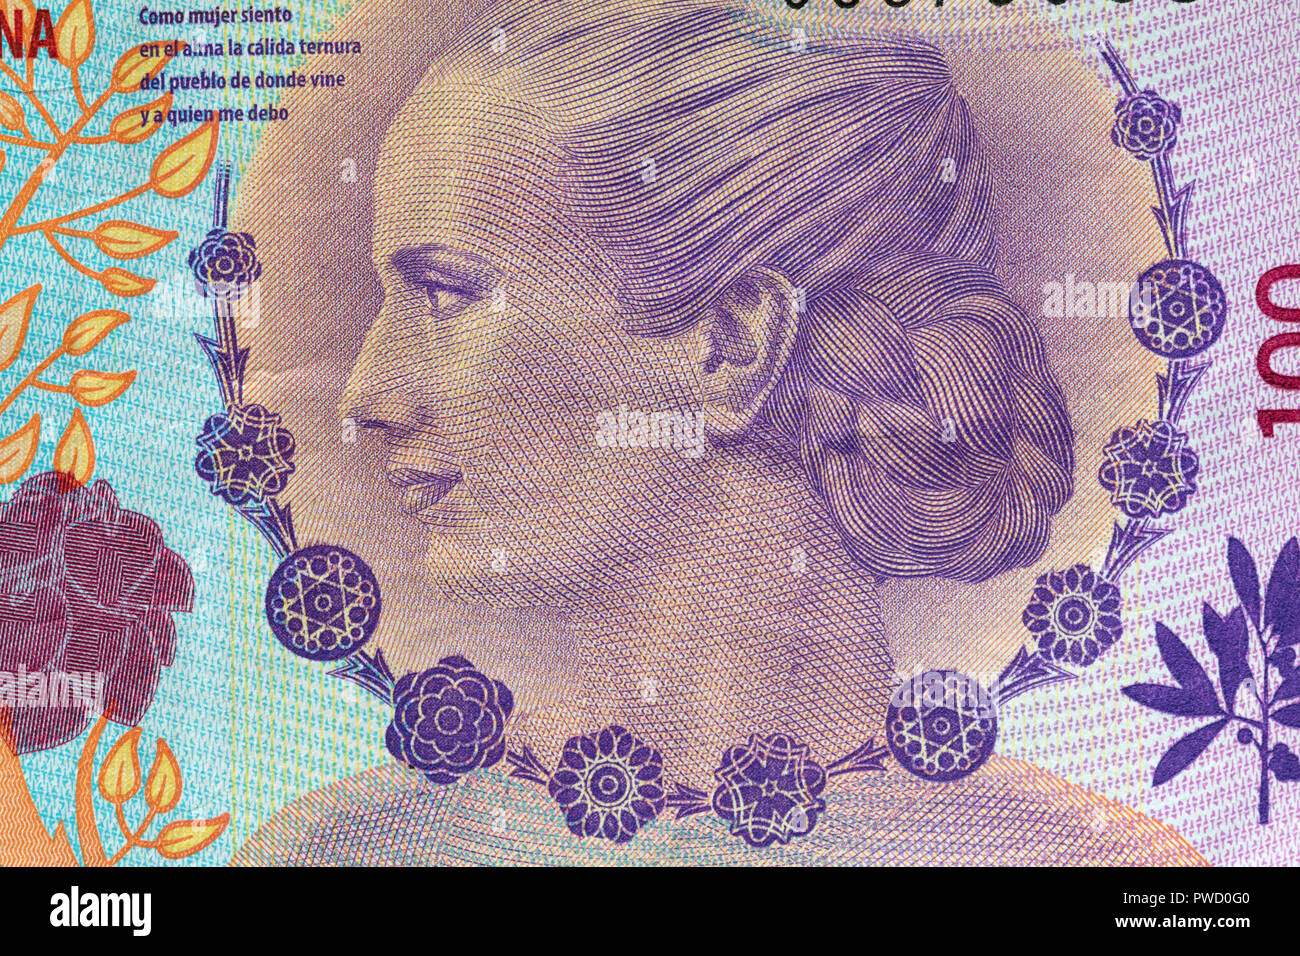 Portrait de Maria Eva Duarte de Peron à partir de 100 pesos, billets de l'Argentine Banque D'Images